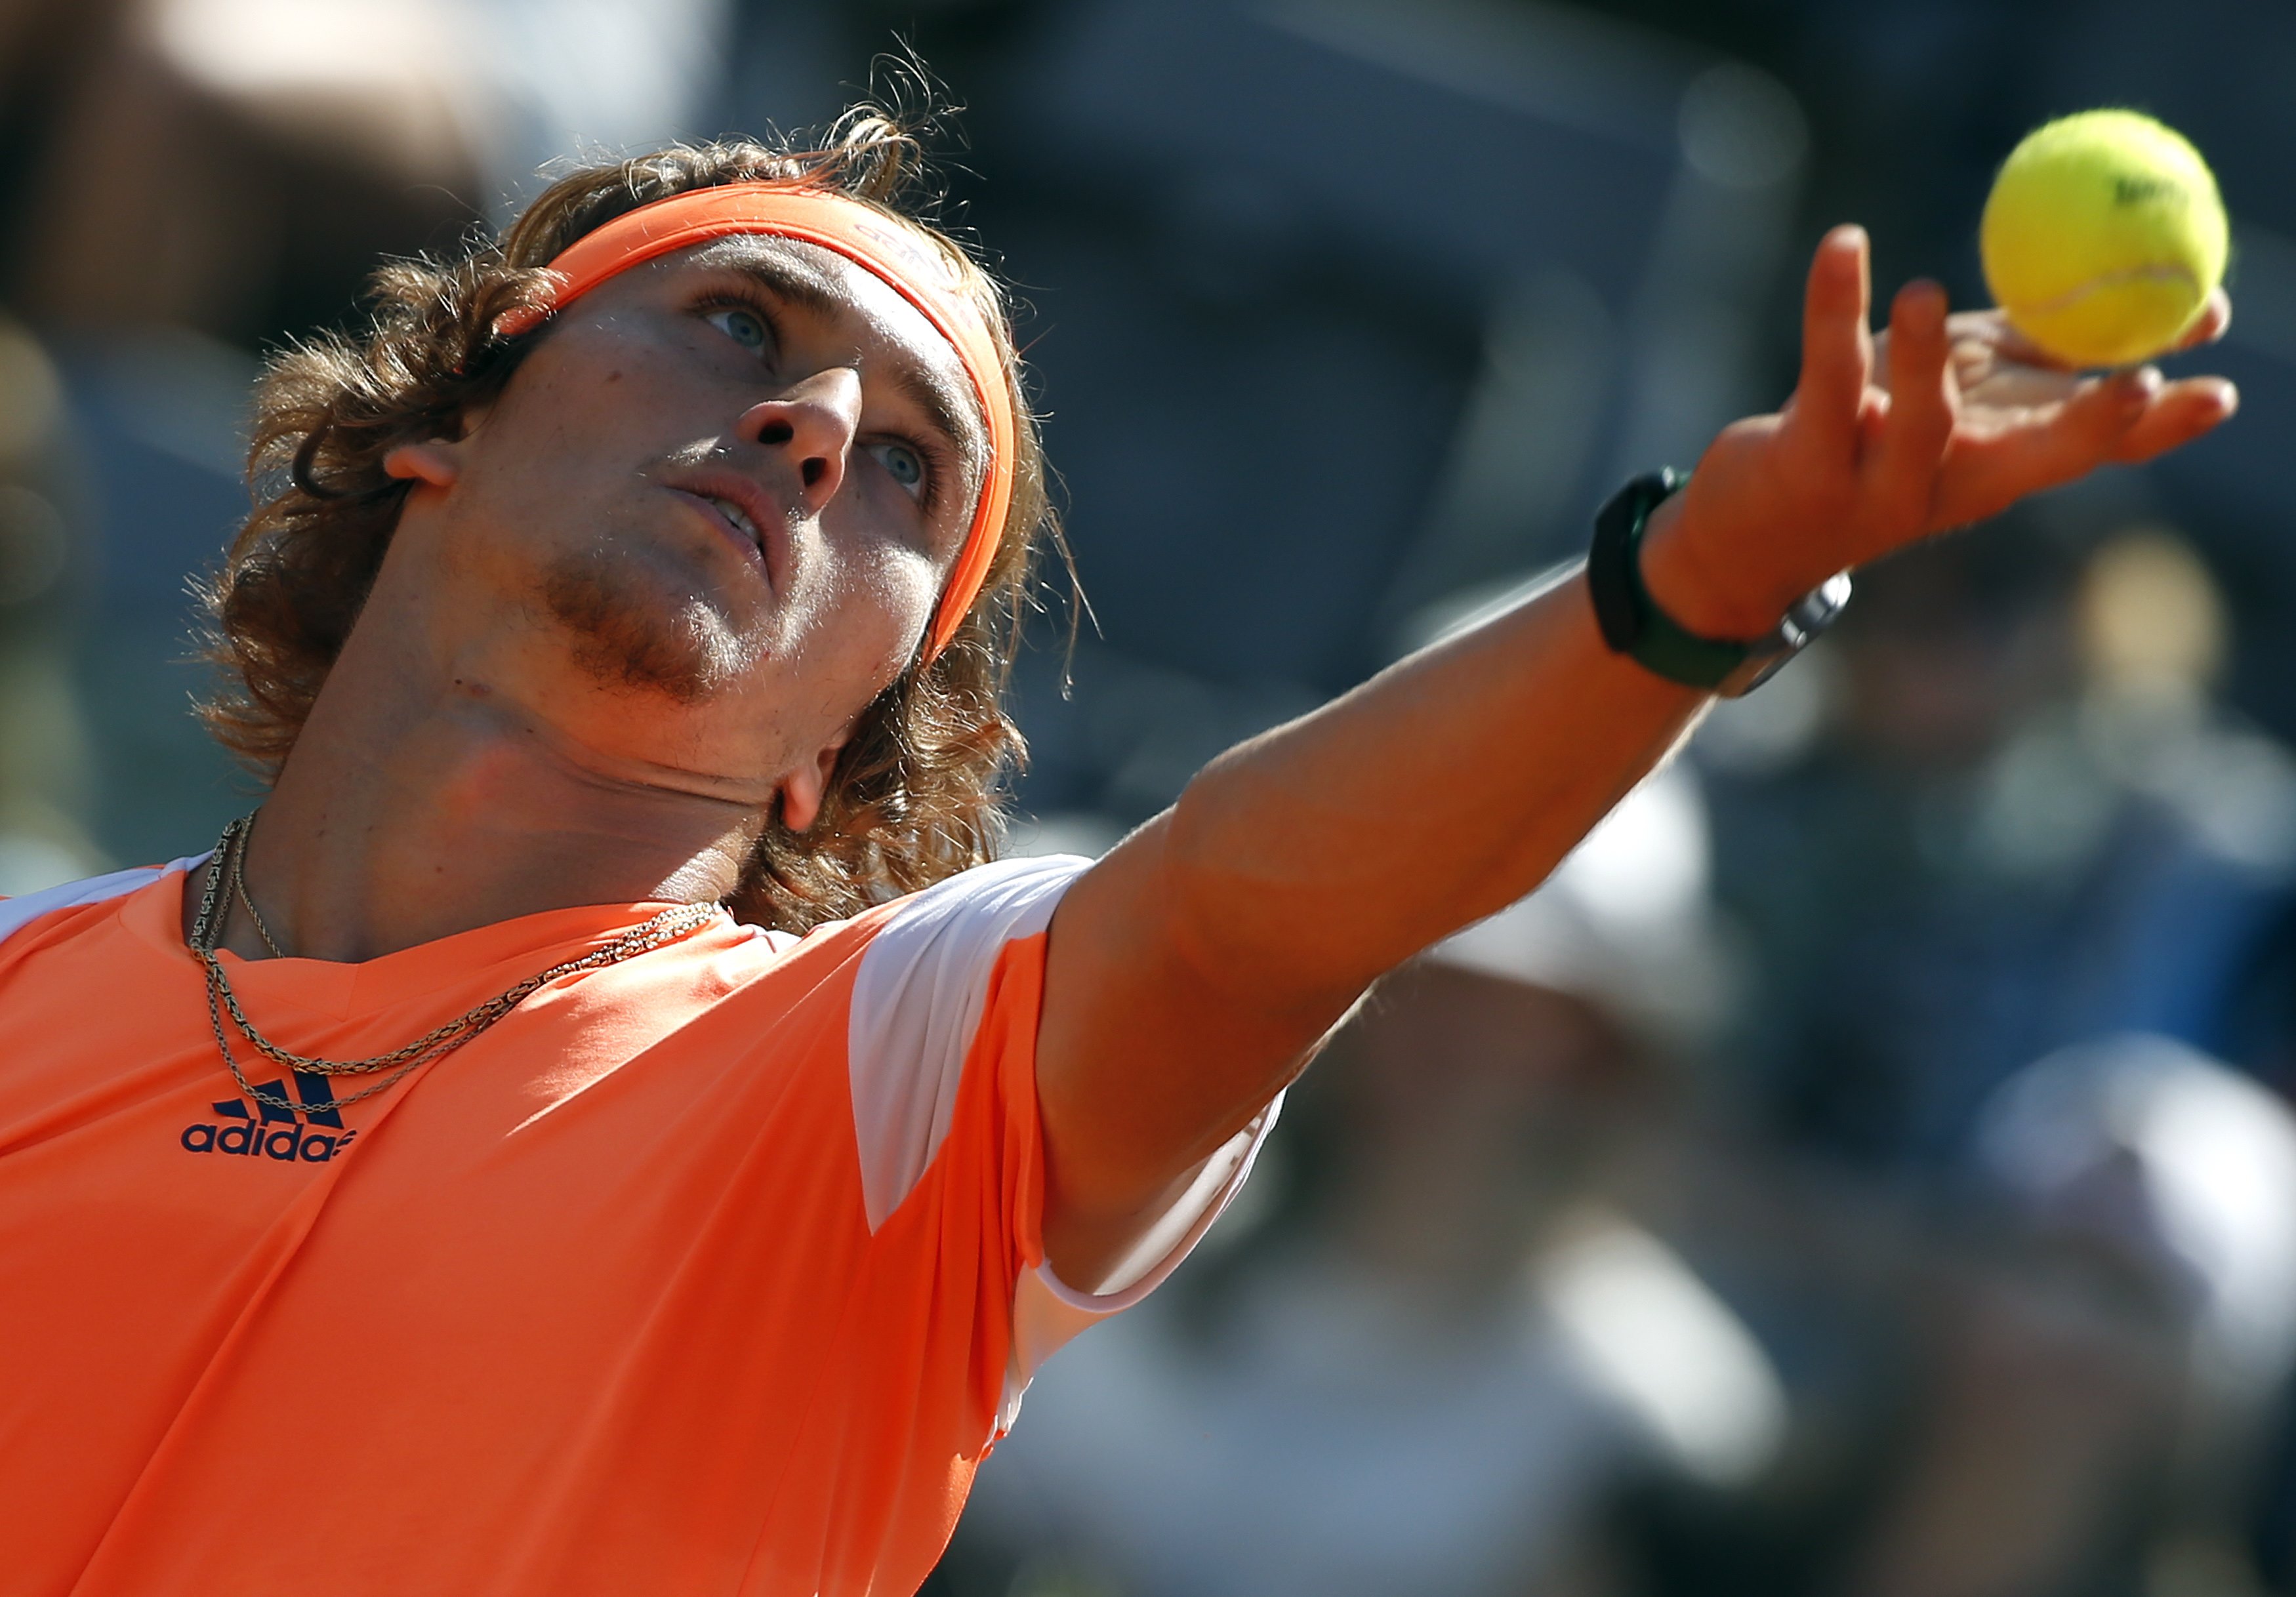 Tennis: Zverev stuns Djokovic to win Italian Open